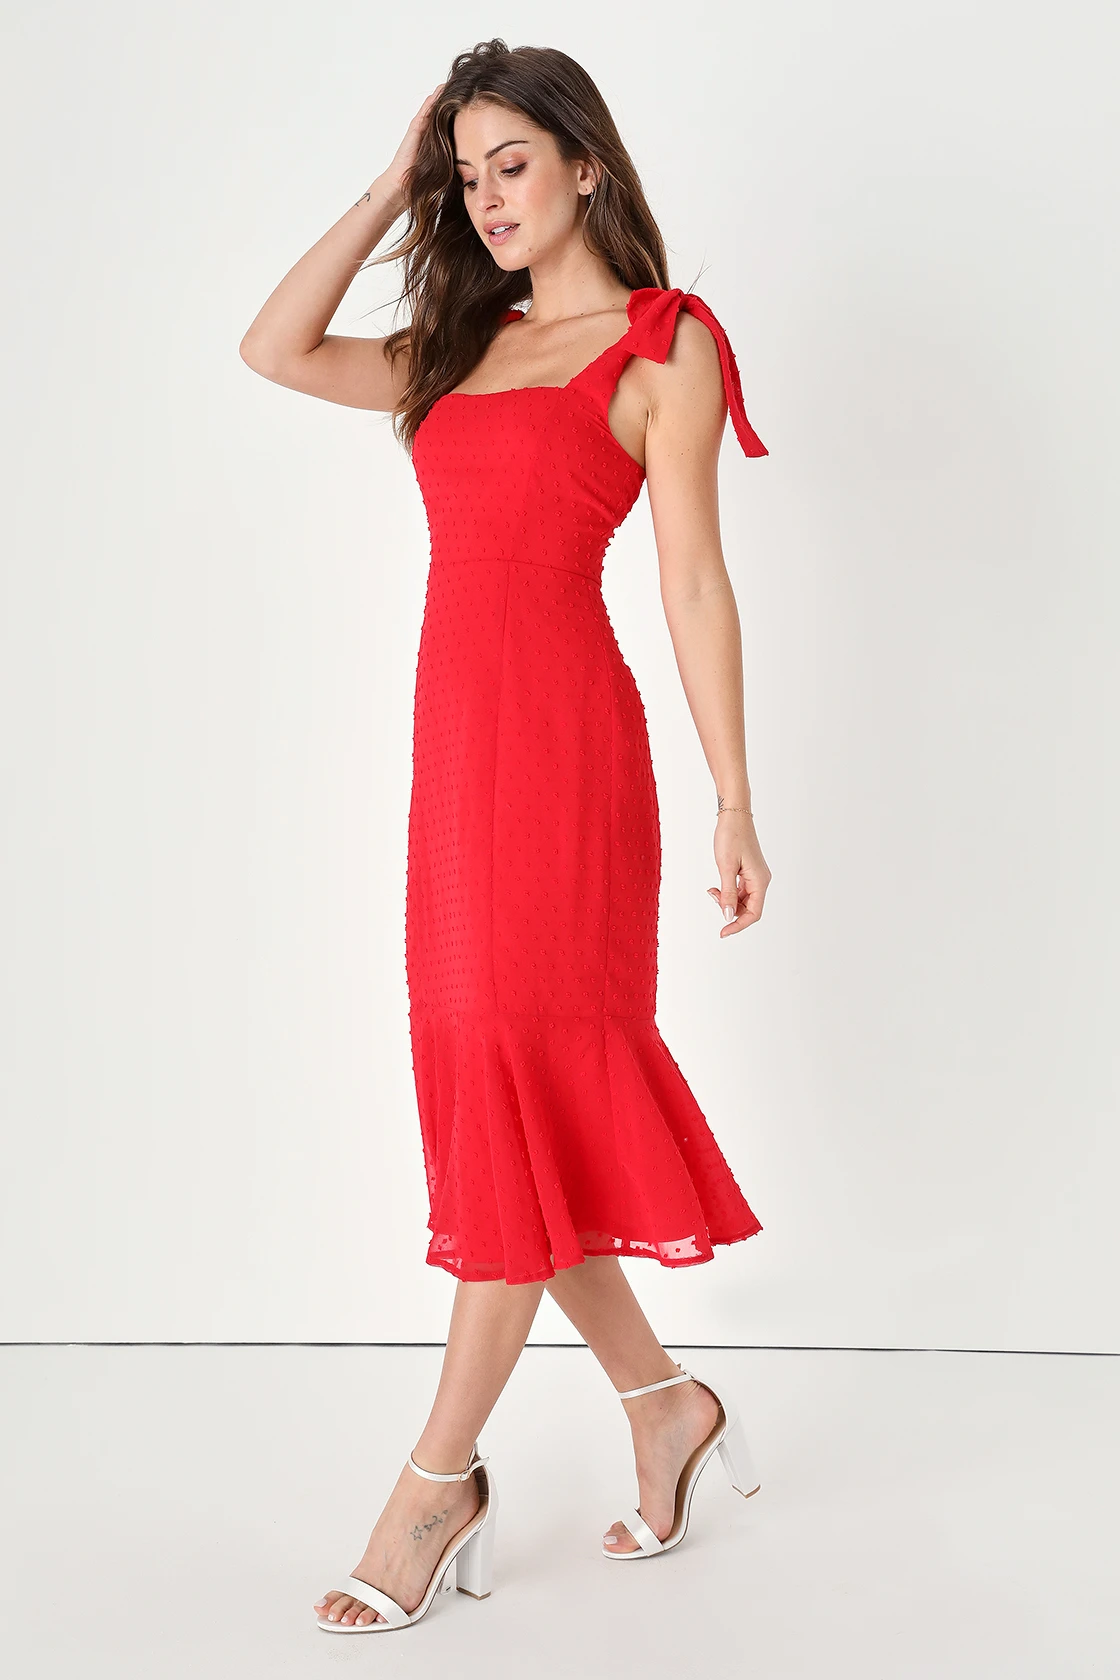 Lulus Bimini Bright Red Swiss Dot Tie-Strap Midi Dress